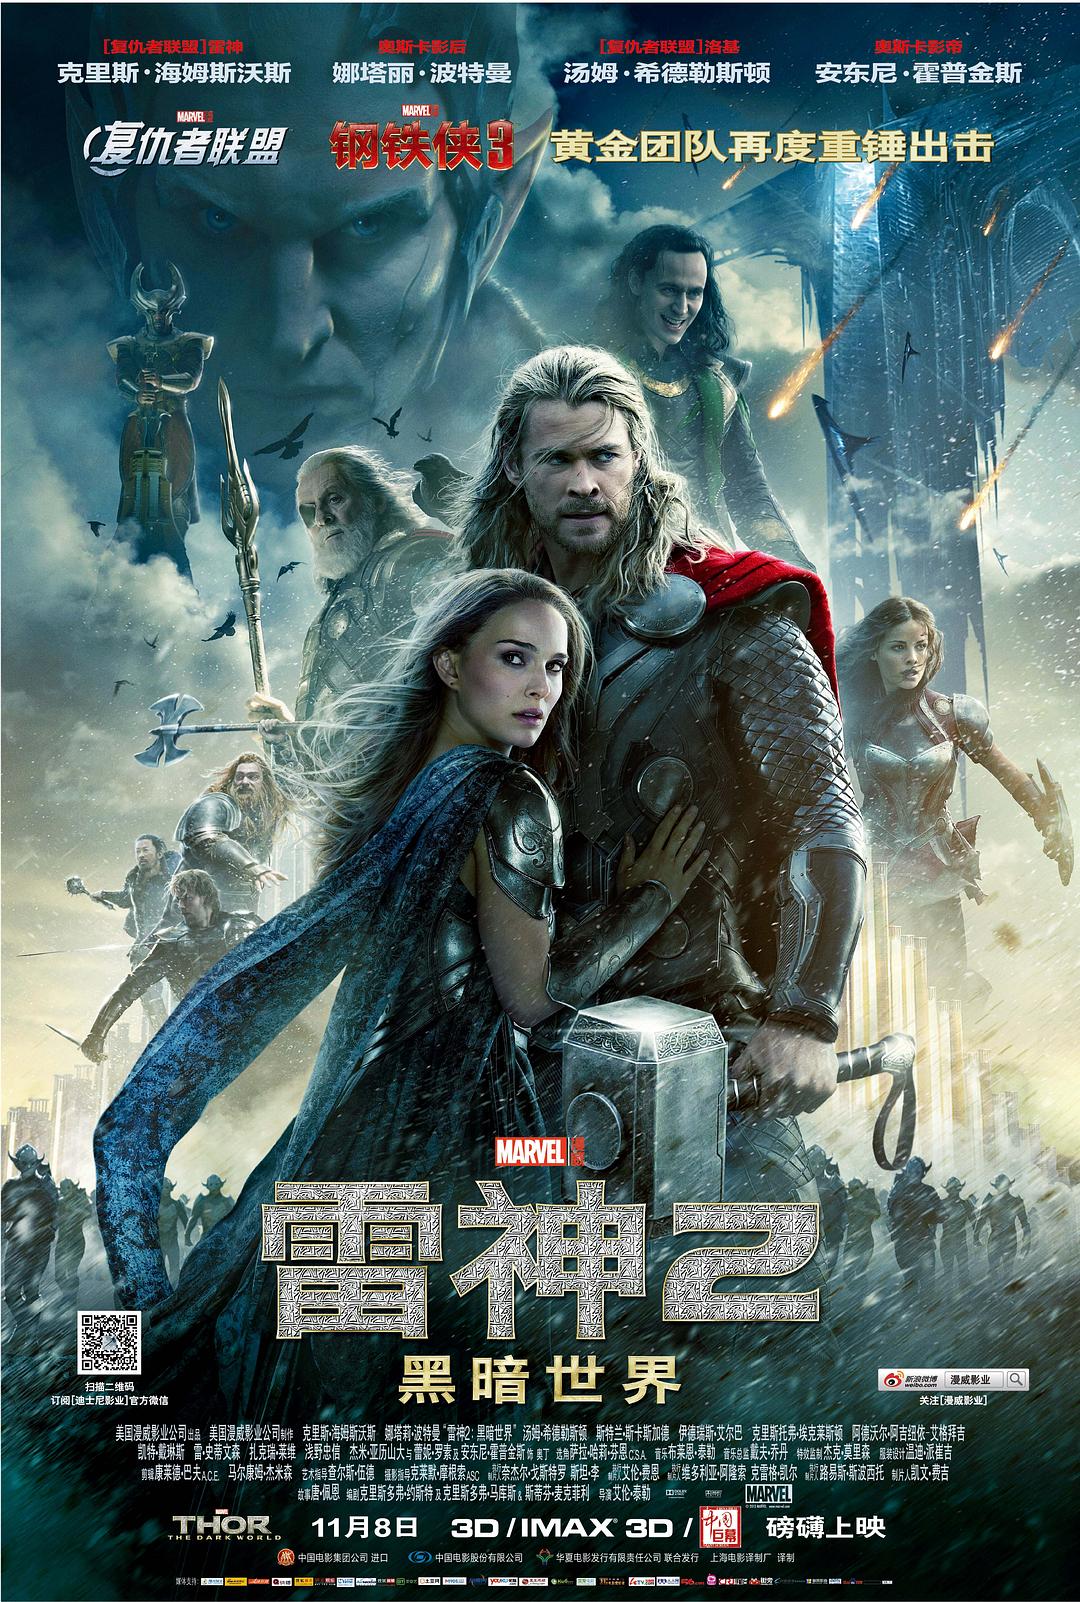 雷神2:黑暗天下 Thor.The.Dark.World.2013.2160p.BluRay.HEVC.TrueHD.7.1.Atmos-BHD 49.08GB-1.jpg